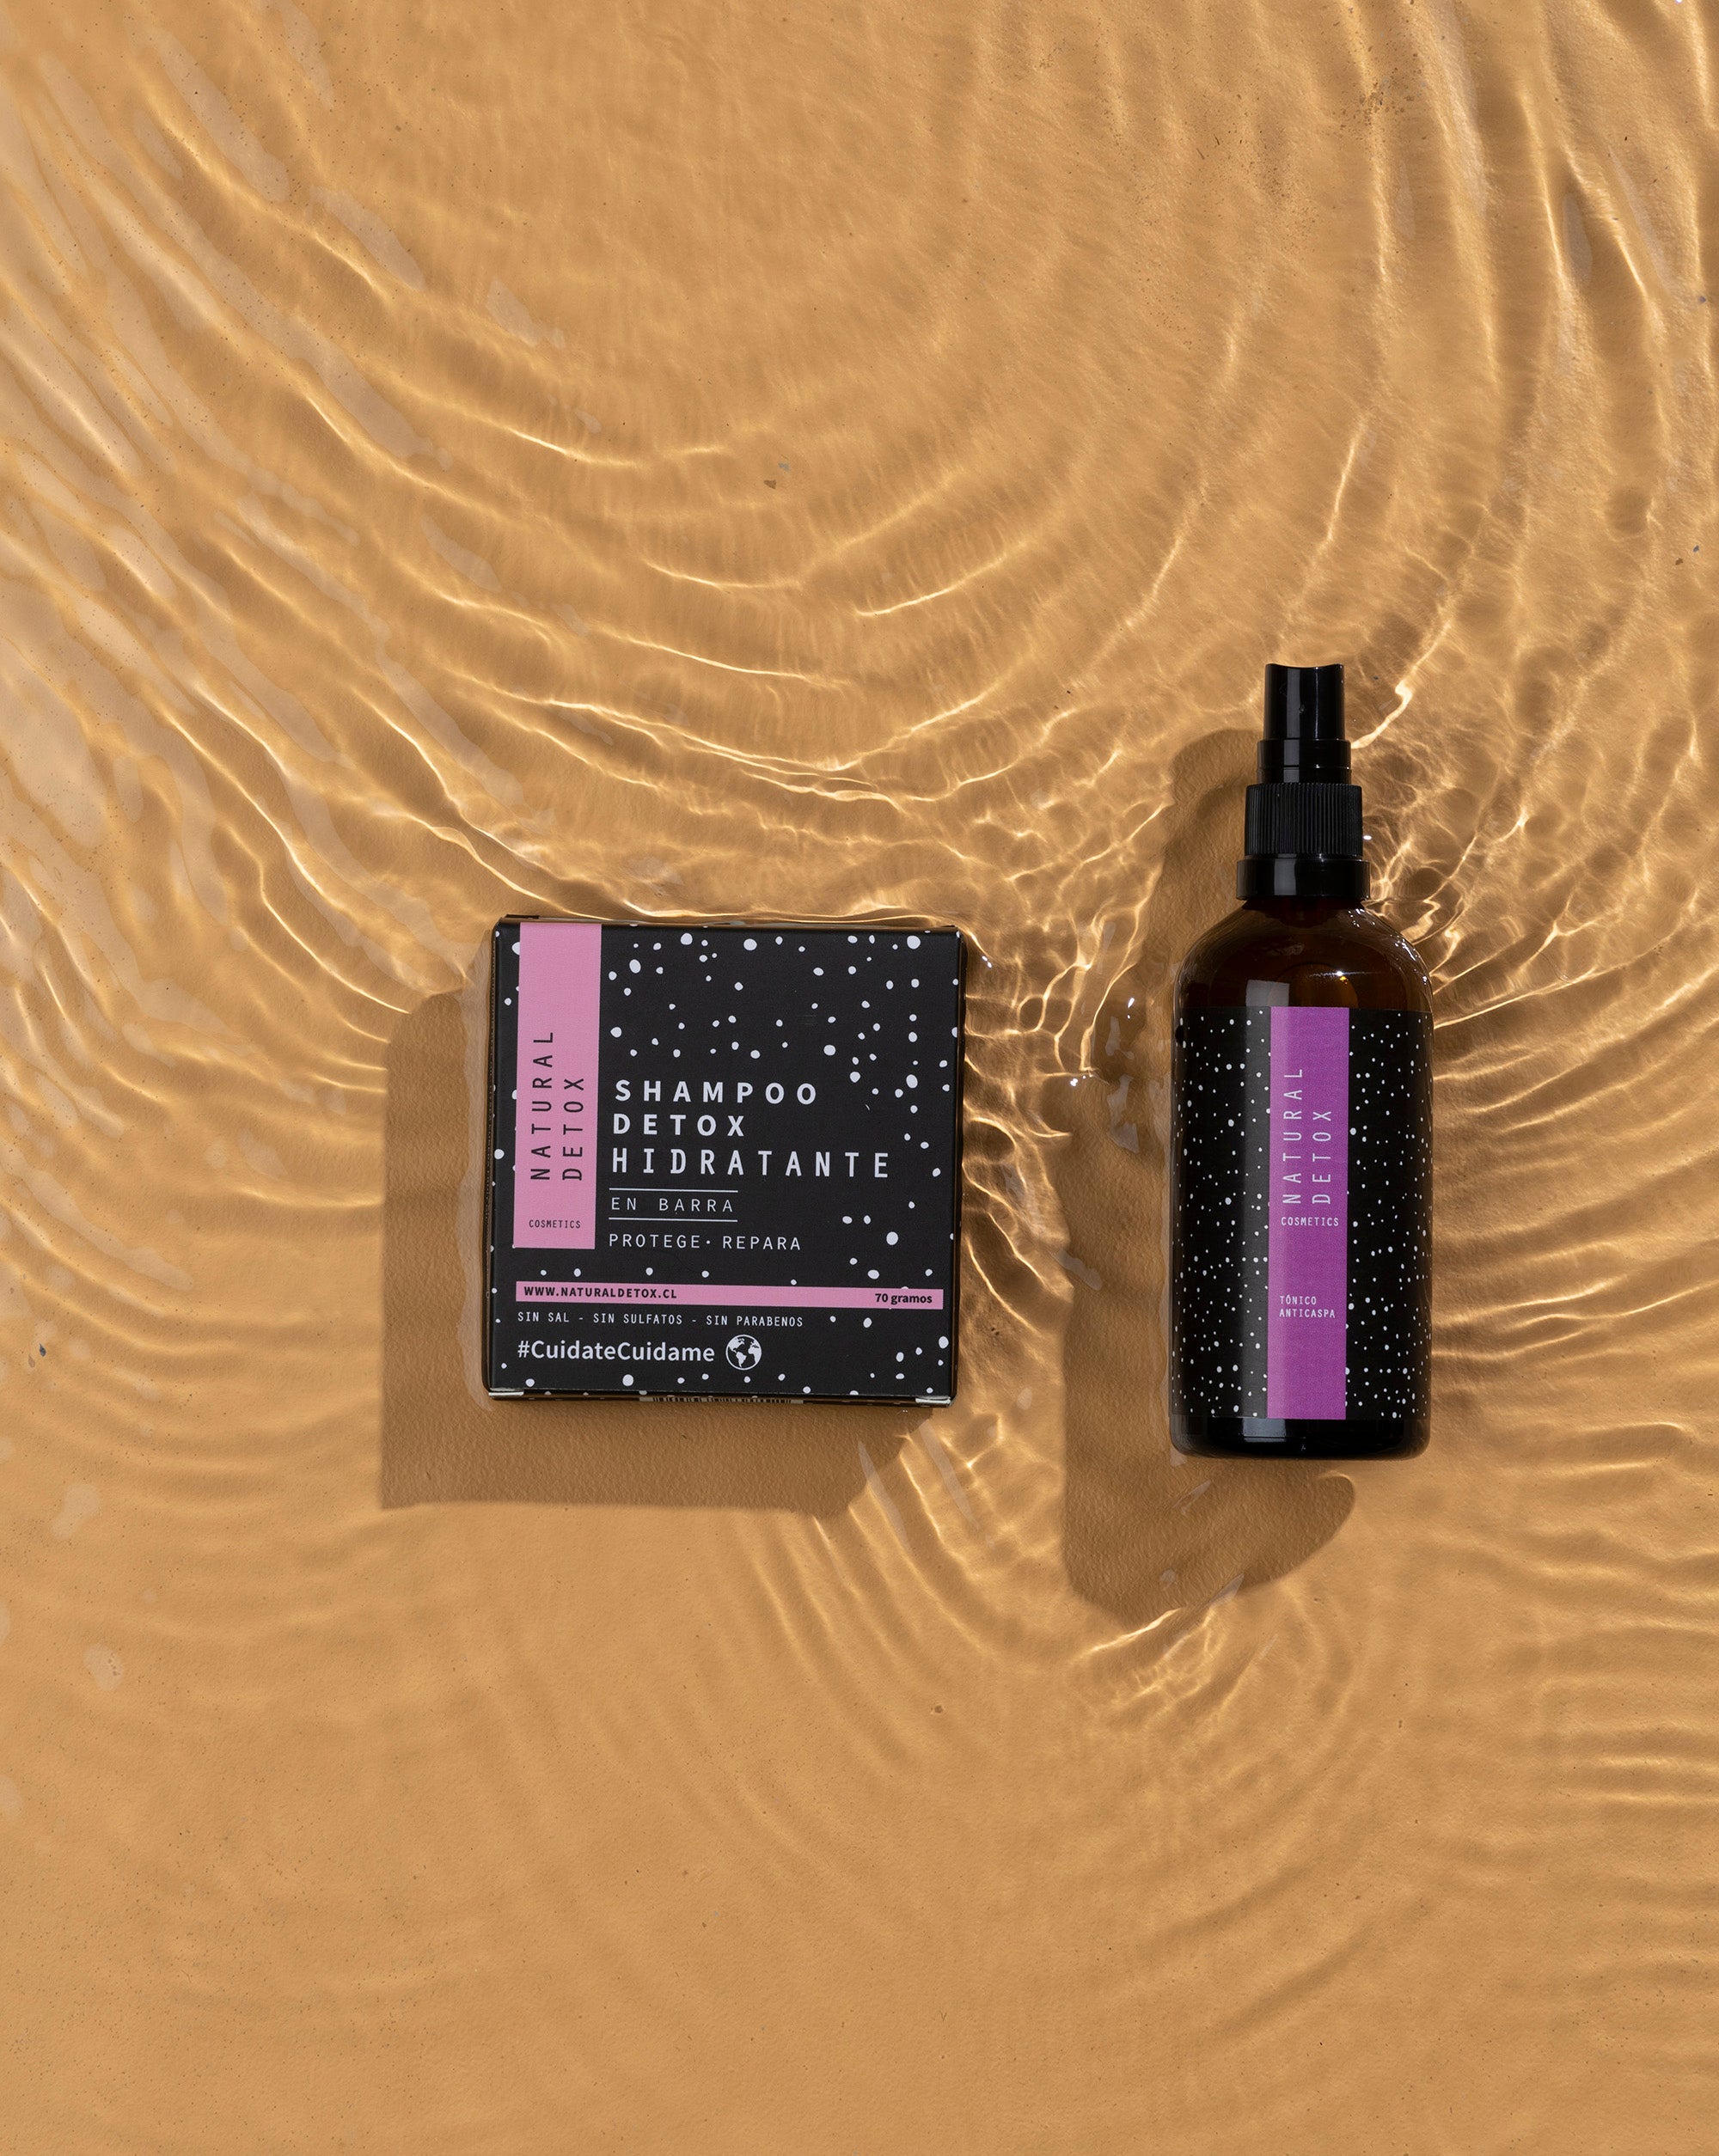 Shampoo Detox Hidratante en barra + Tónico anticaspa